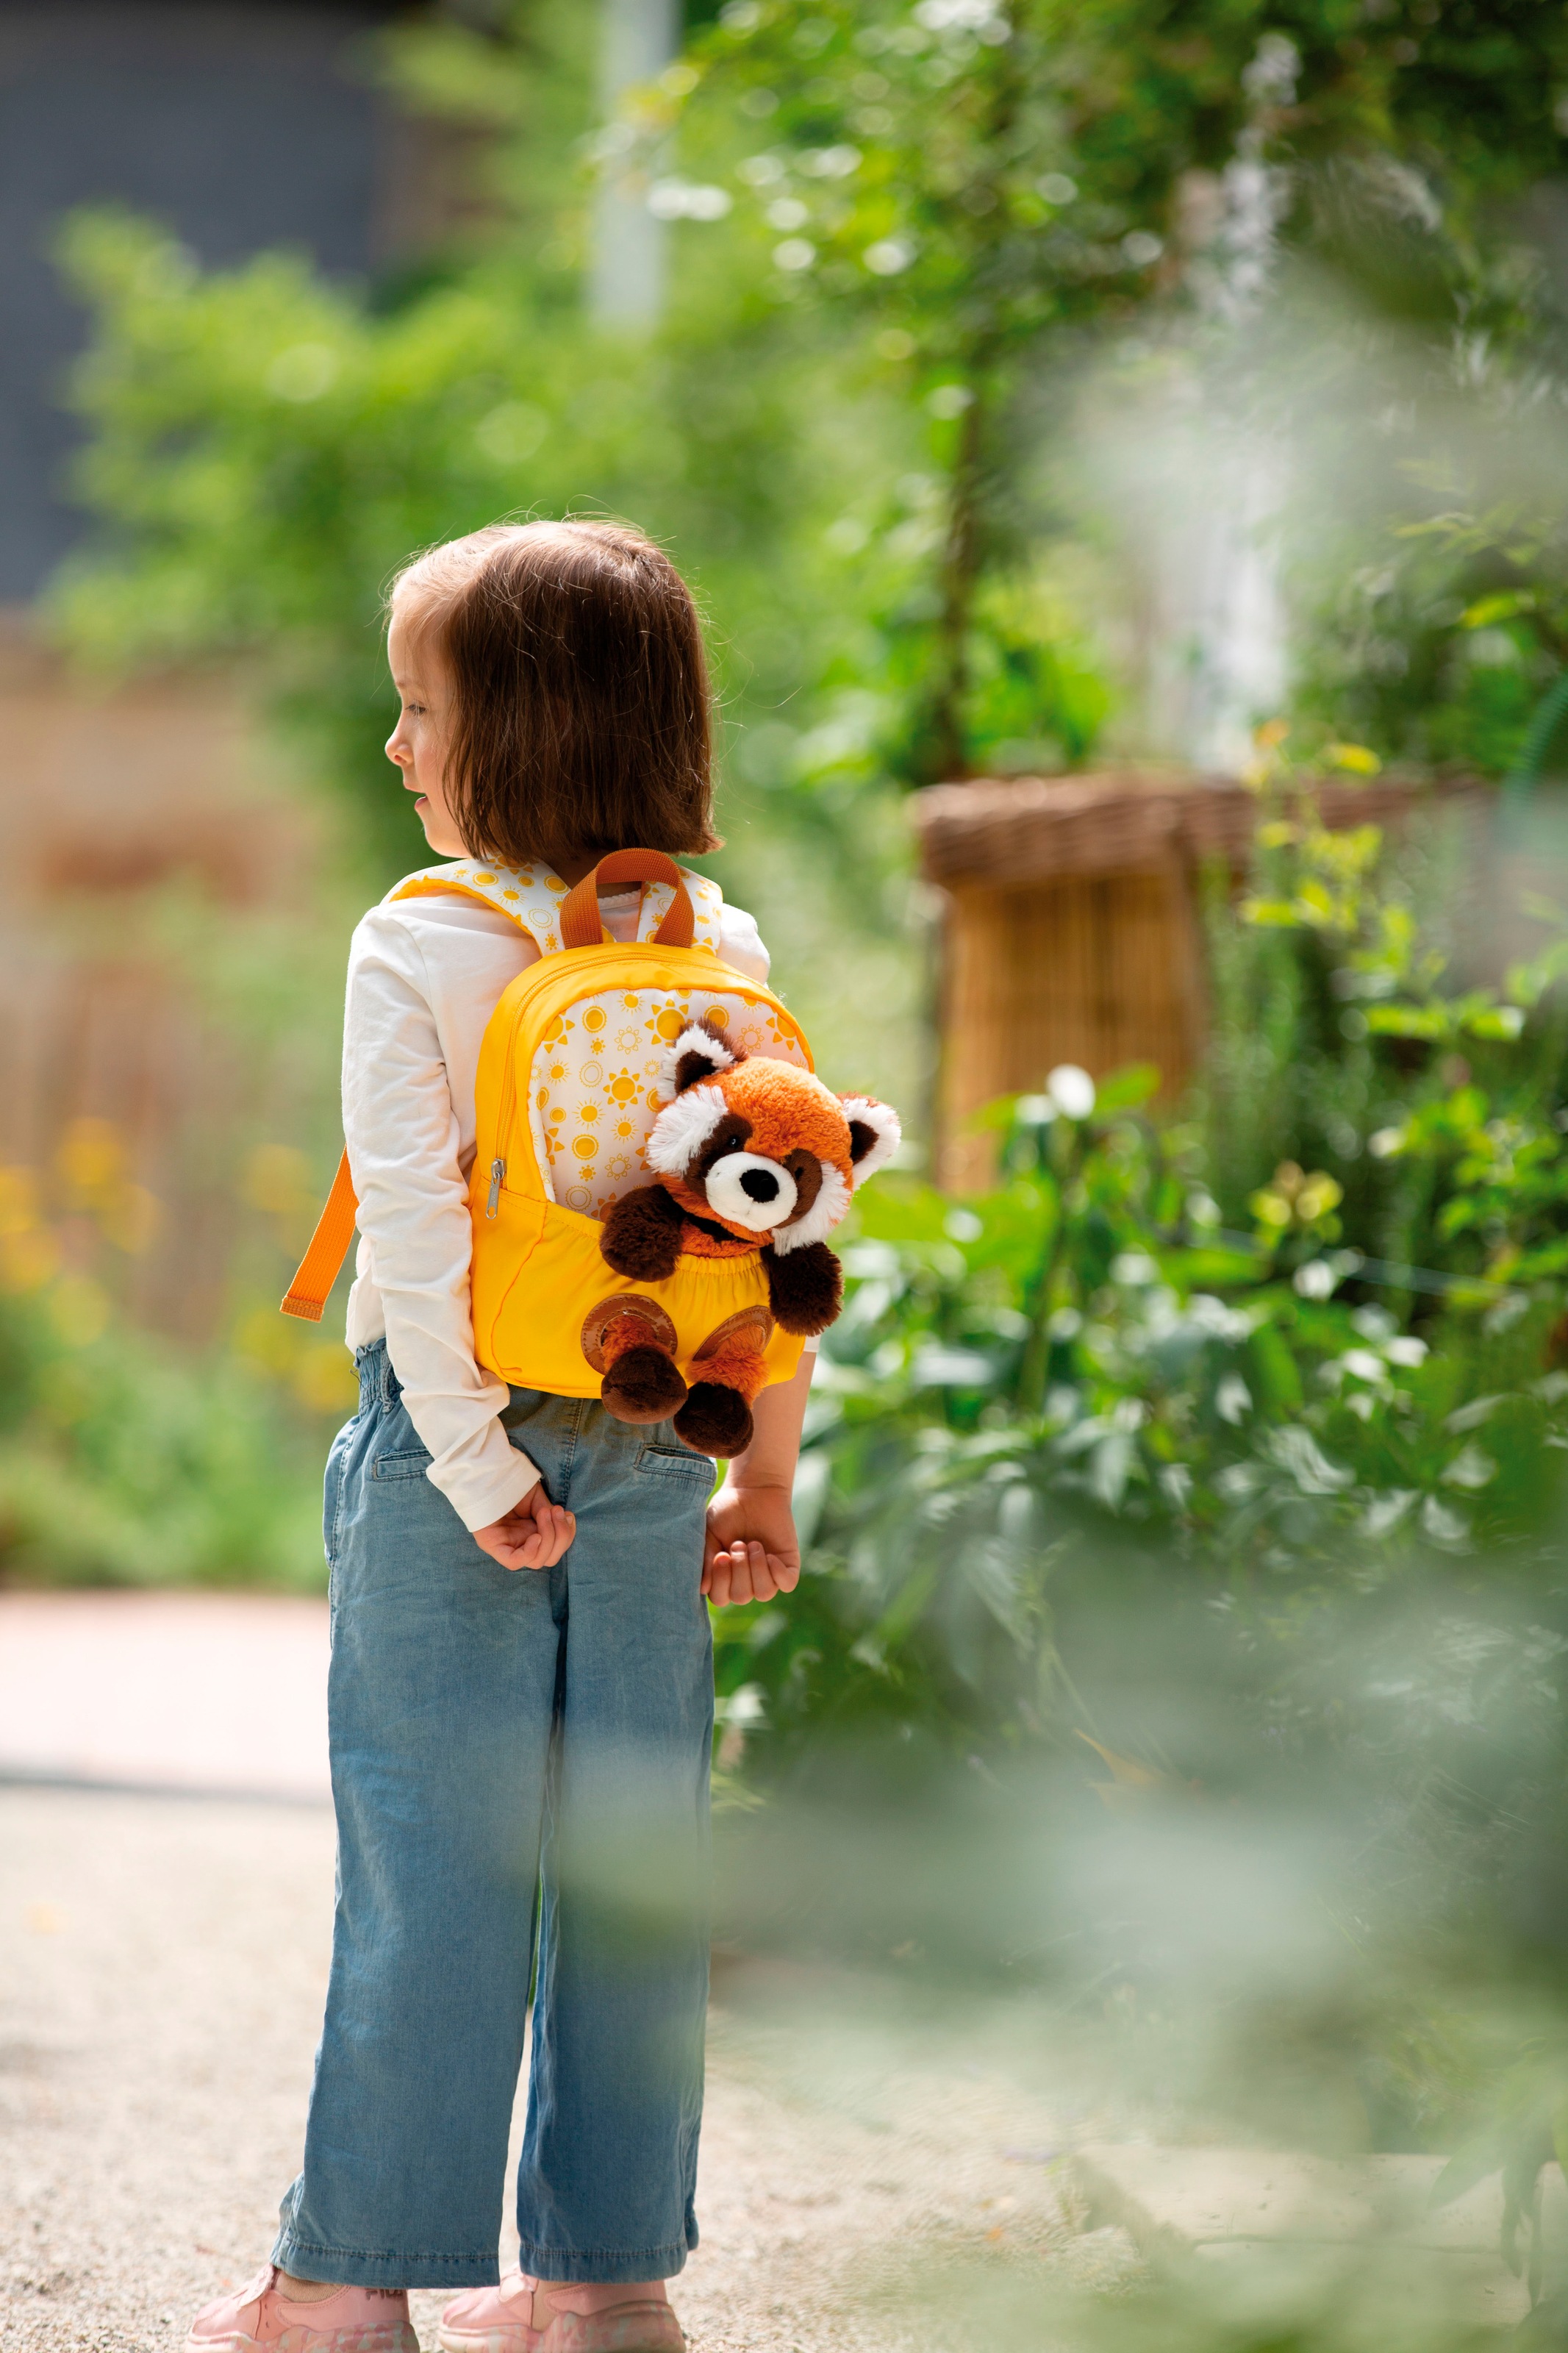 Nici Kinderrucksack »Travel Friends, Rucksack mit Plüsch Roter Panda, 25 cm«